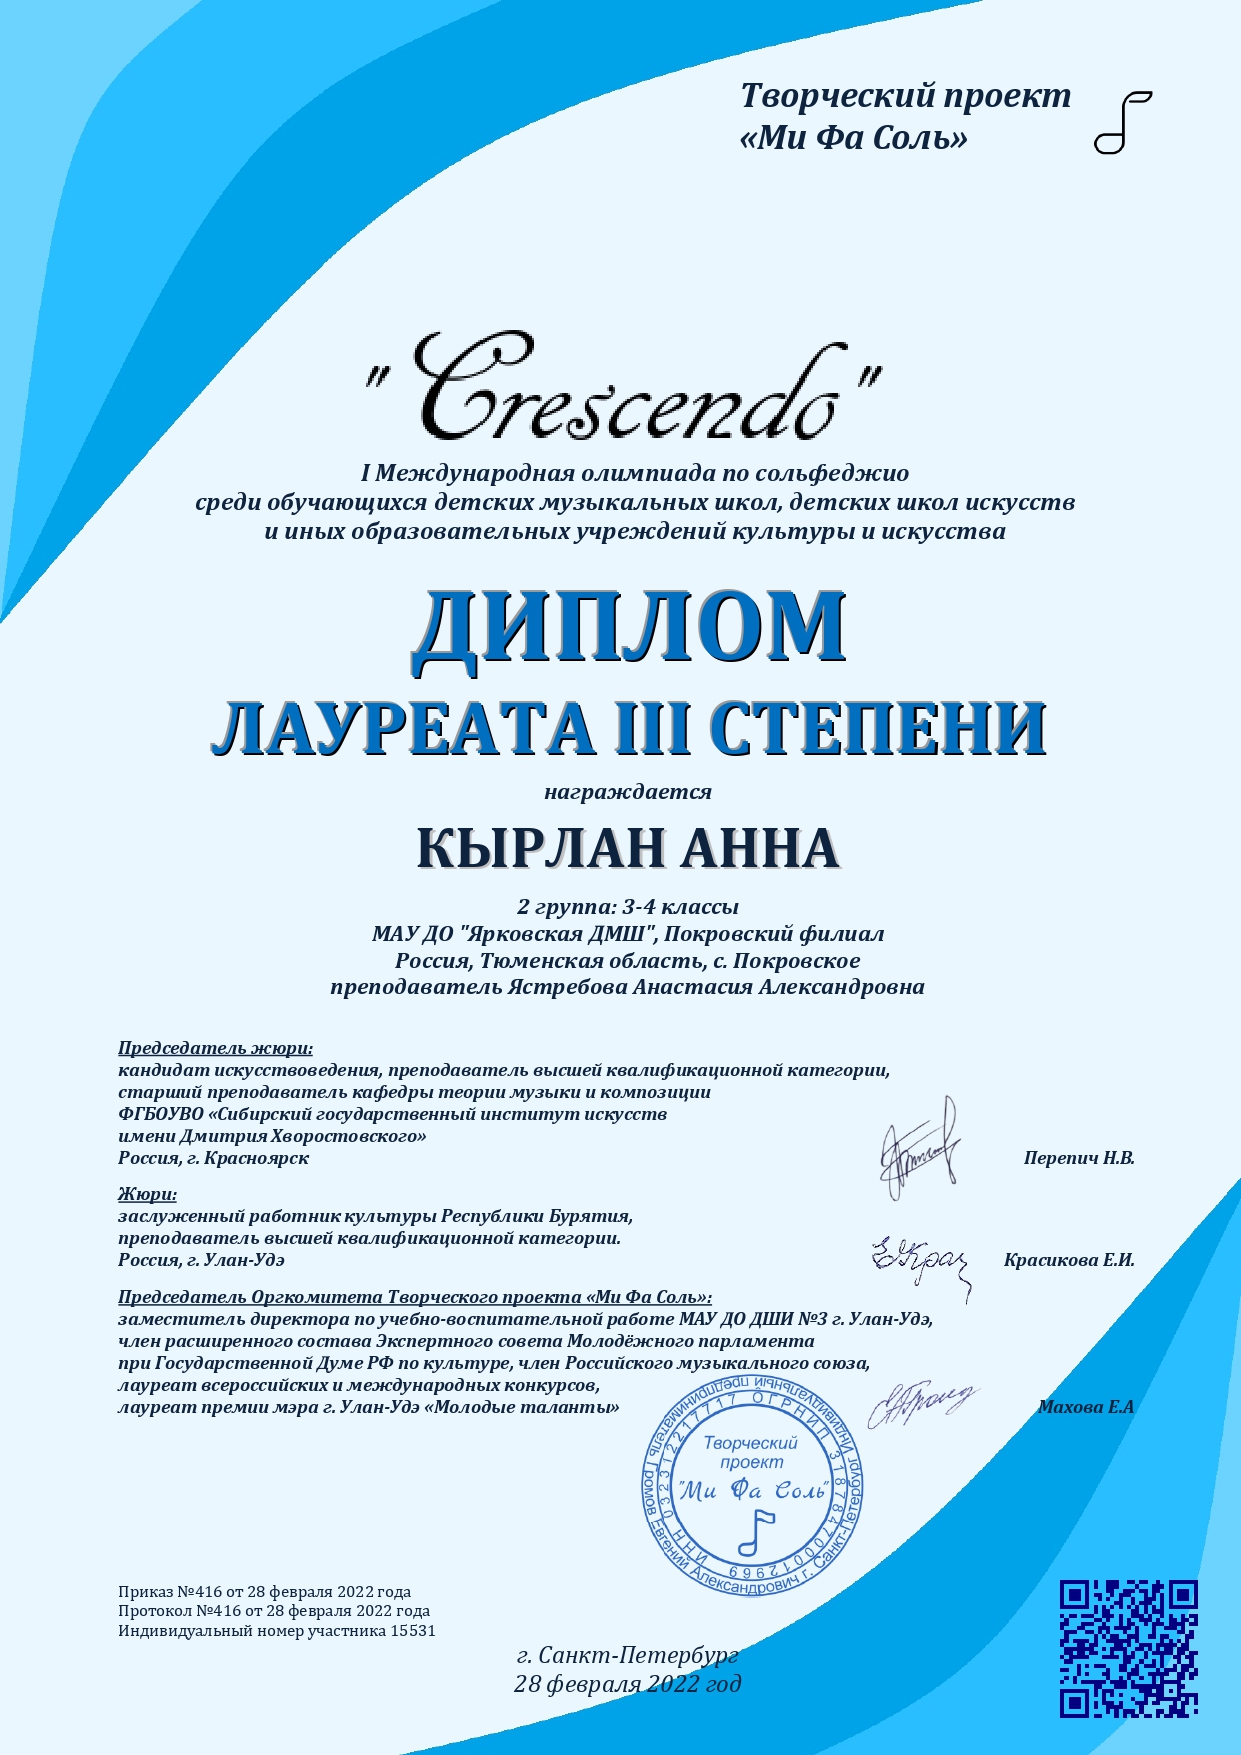 Кырлан Анна 15531 Сертификат Crescendo 2022 page 0001